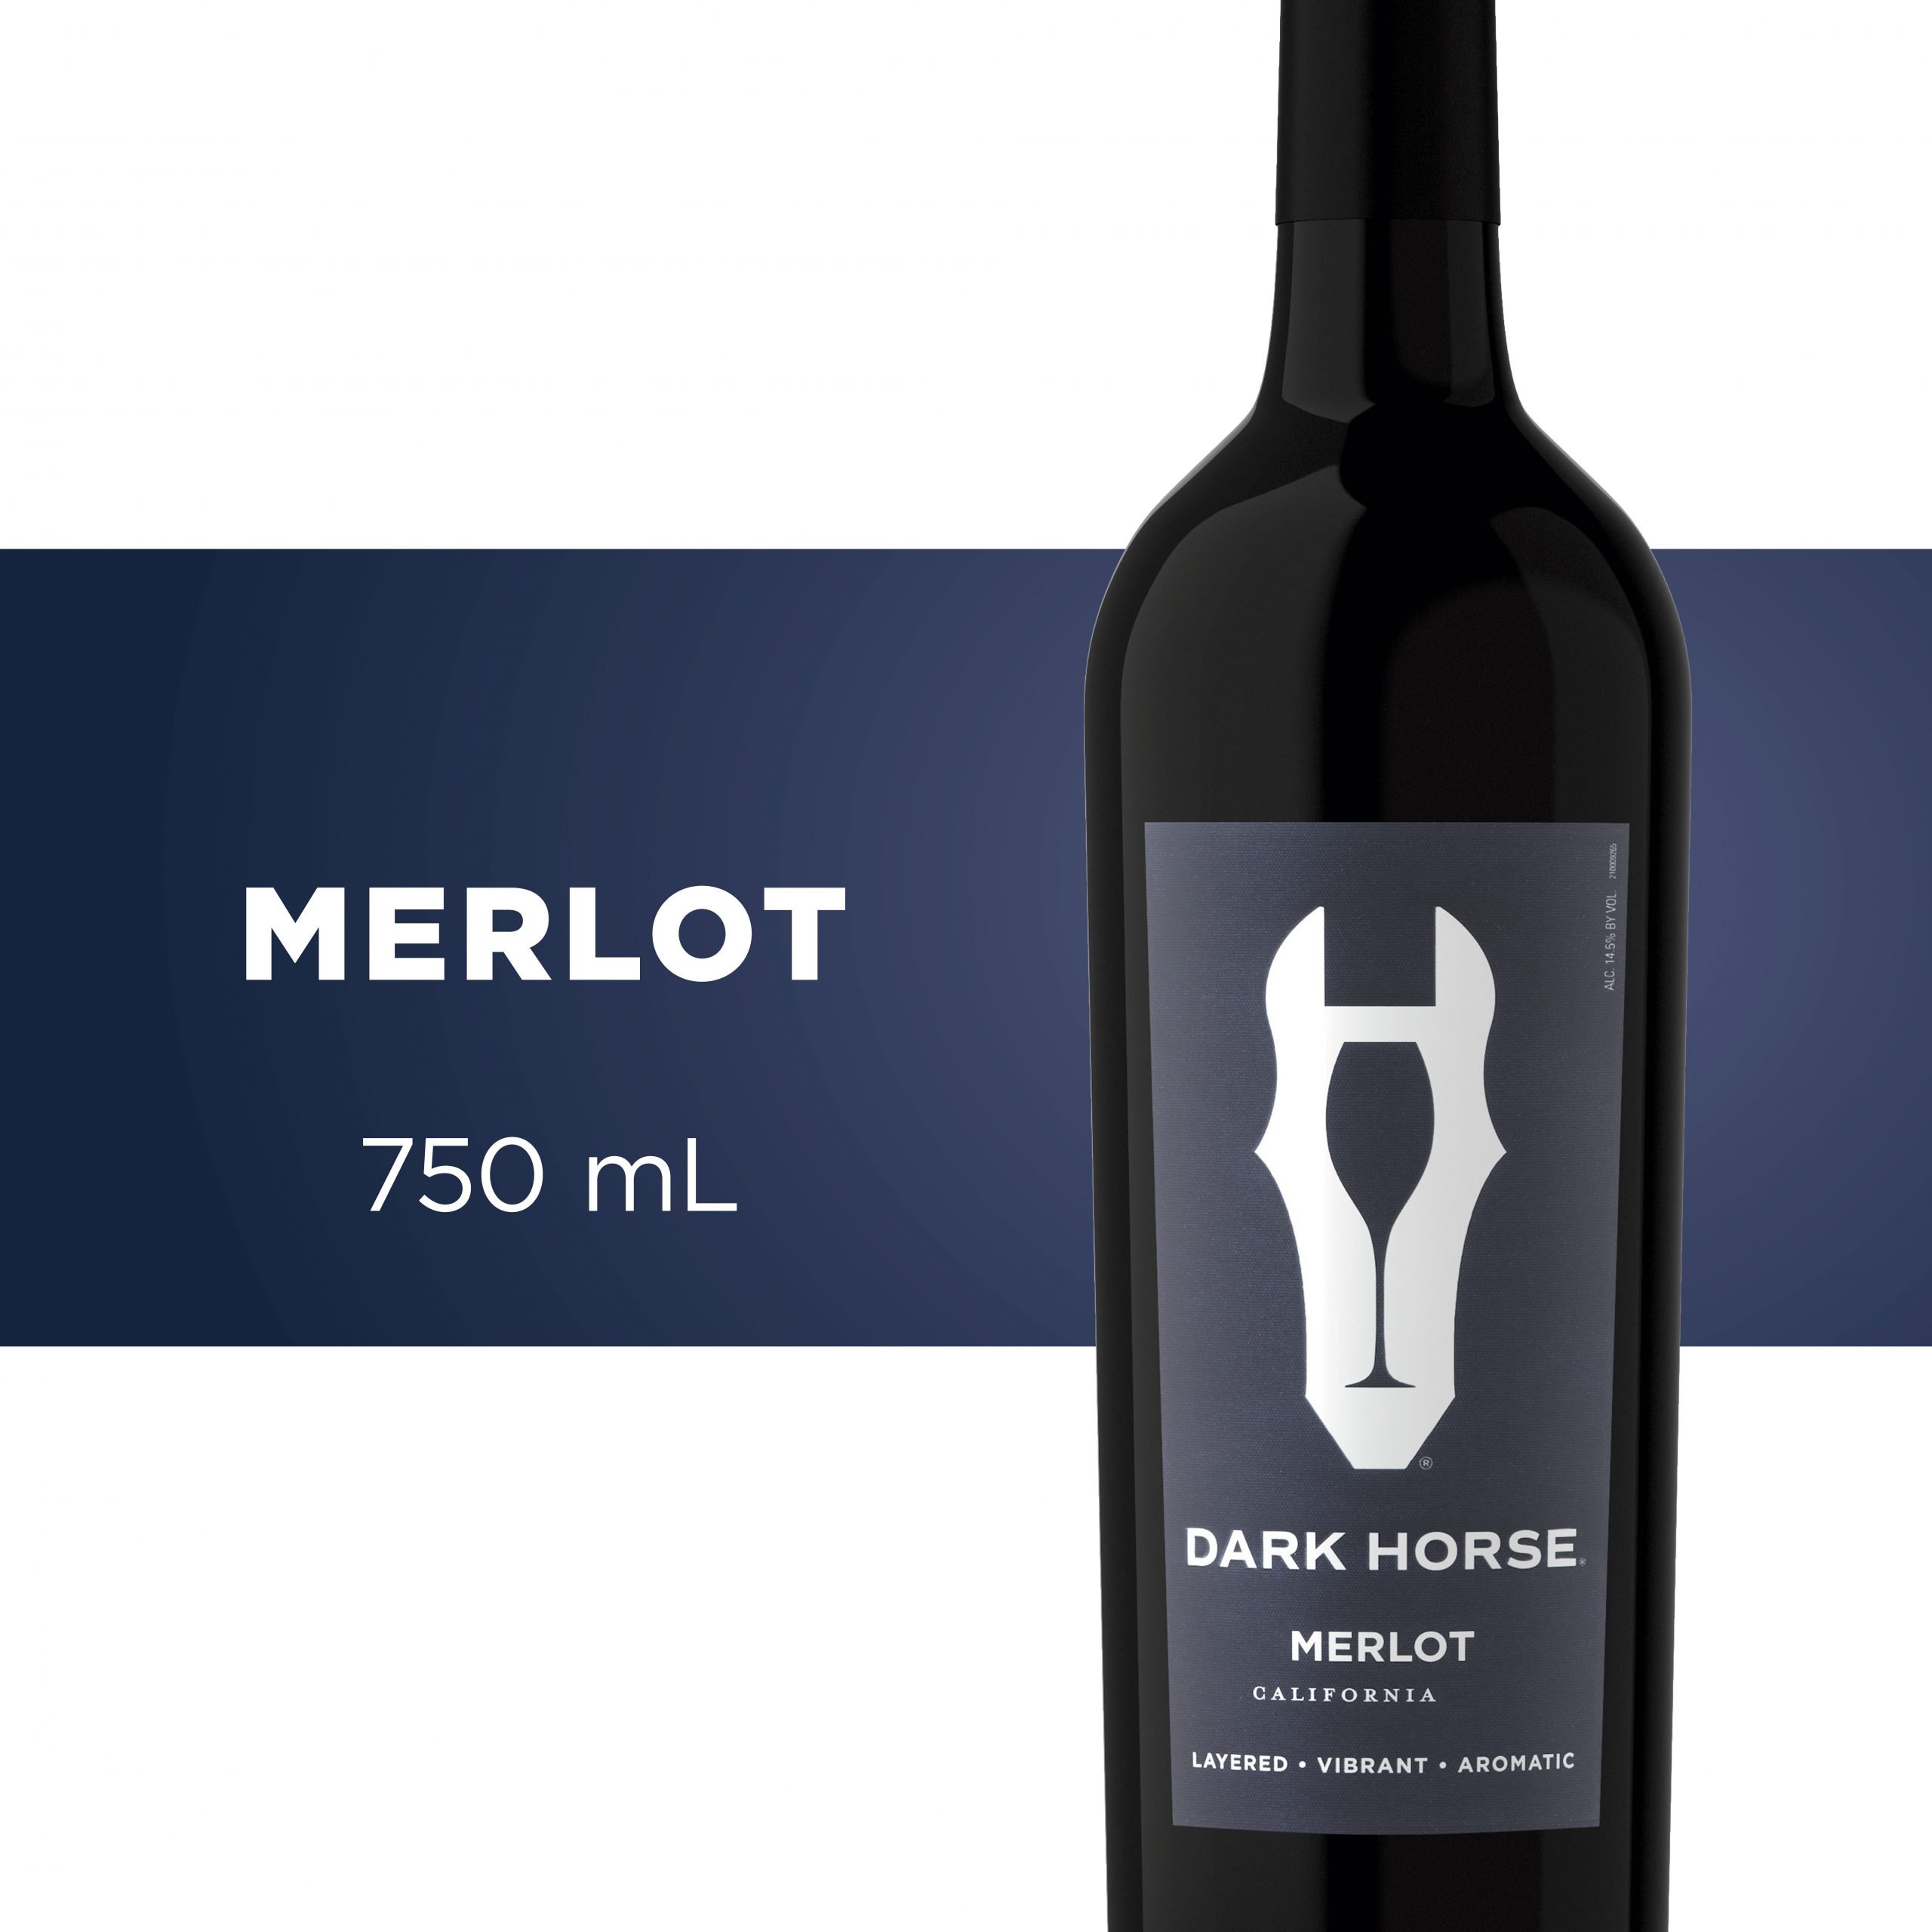 Dark Horse Merlot Wine, 750 mL